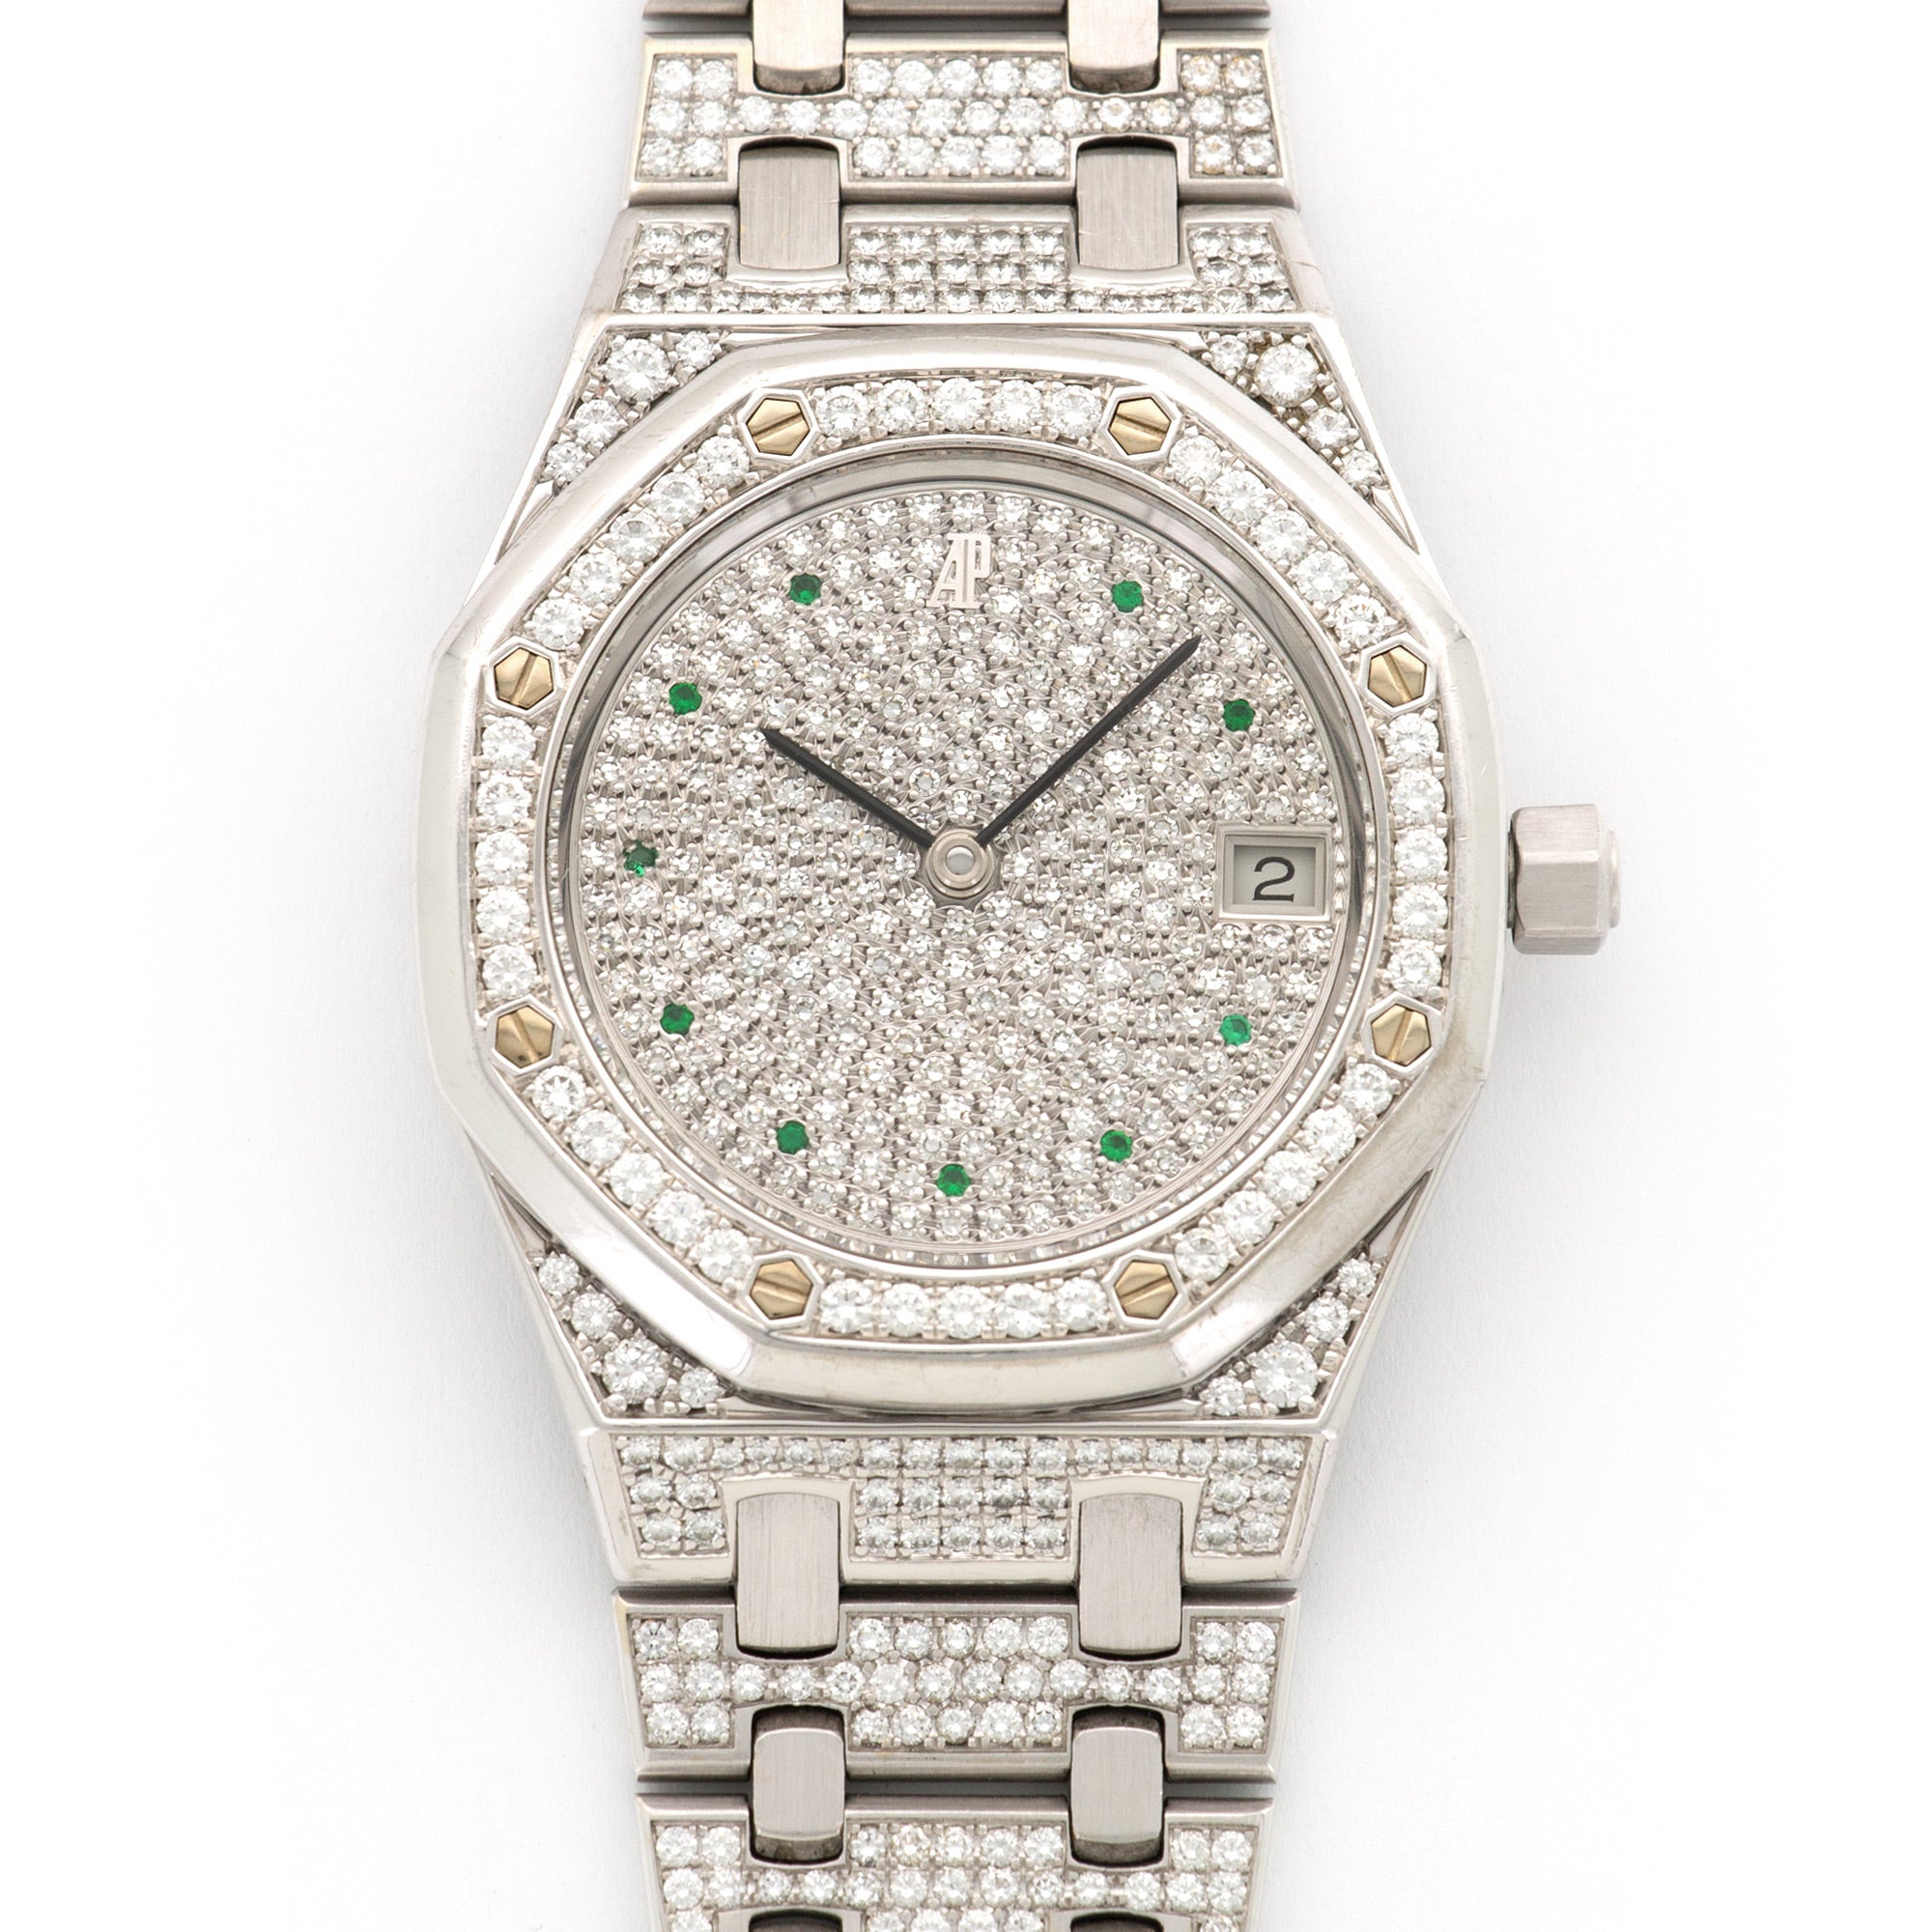 Audemars Piguet - Audemars Piguet White Gold Royal Oak Diamond & Emerald Watch - The Keystone Watches